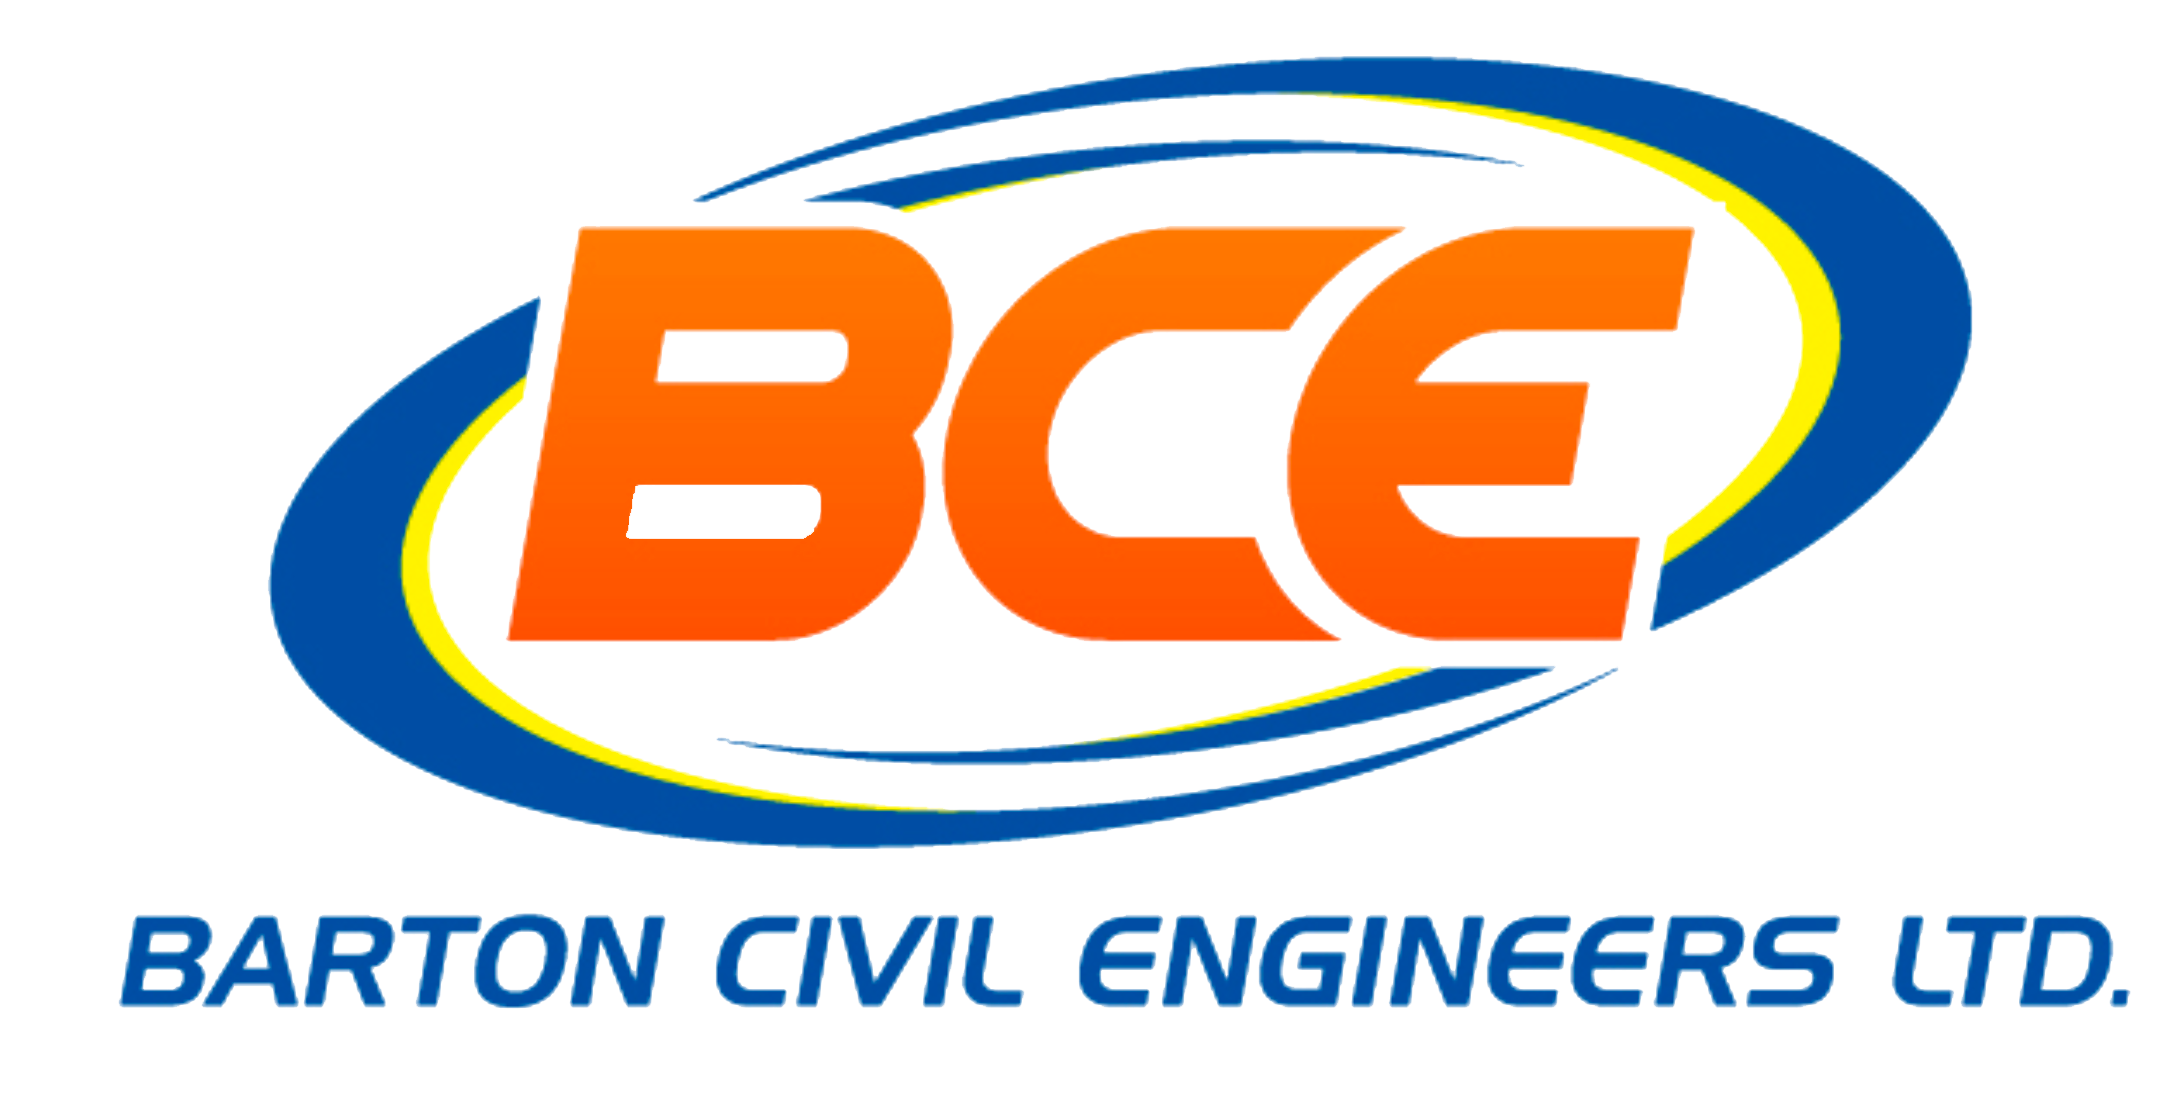 Barton Civil Engineers Ltd